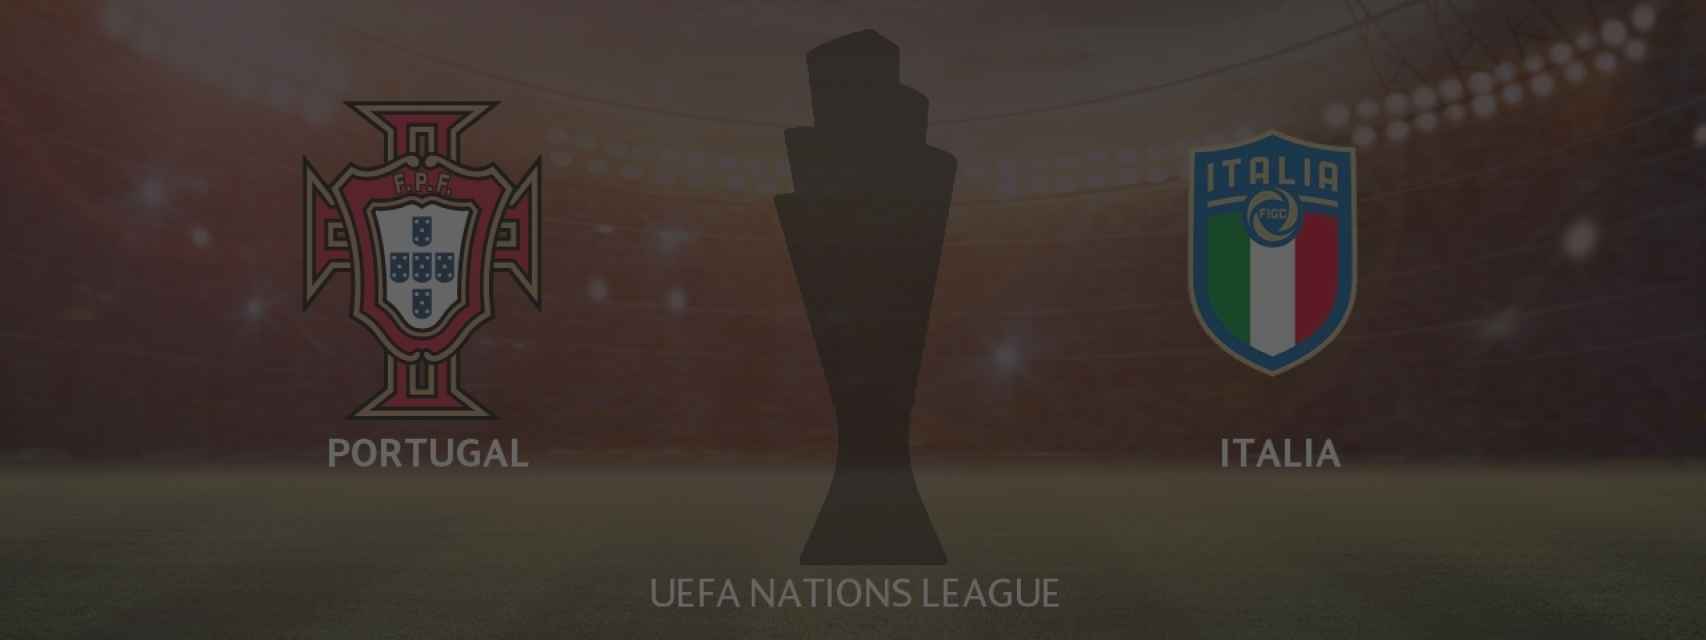 Portugal - Italia, UEFA Nations League